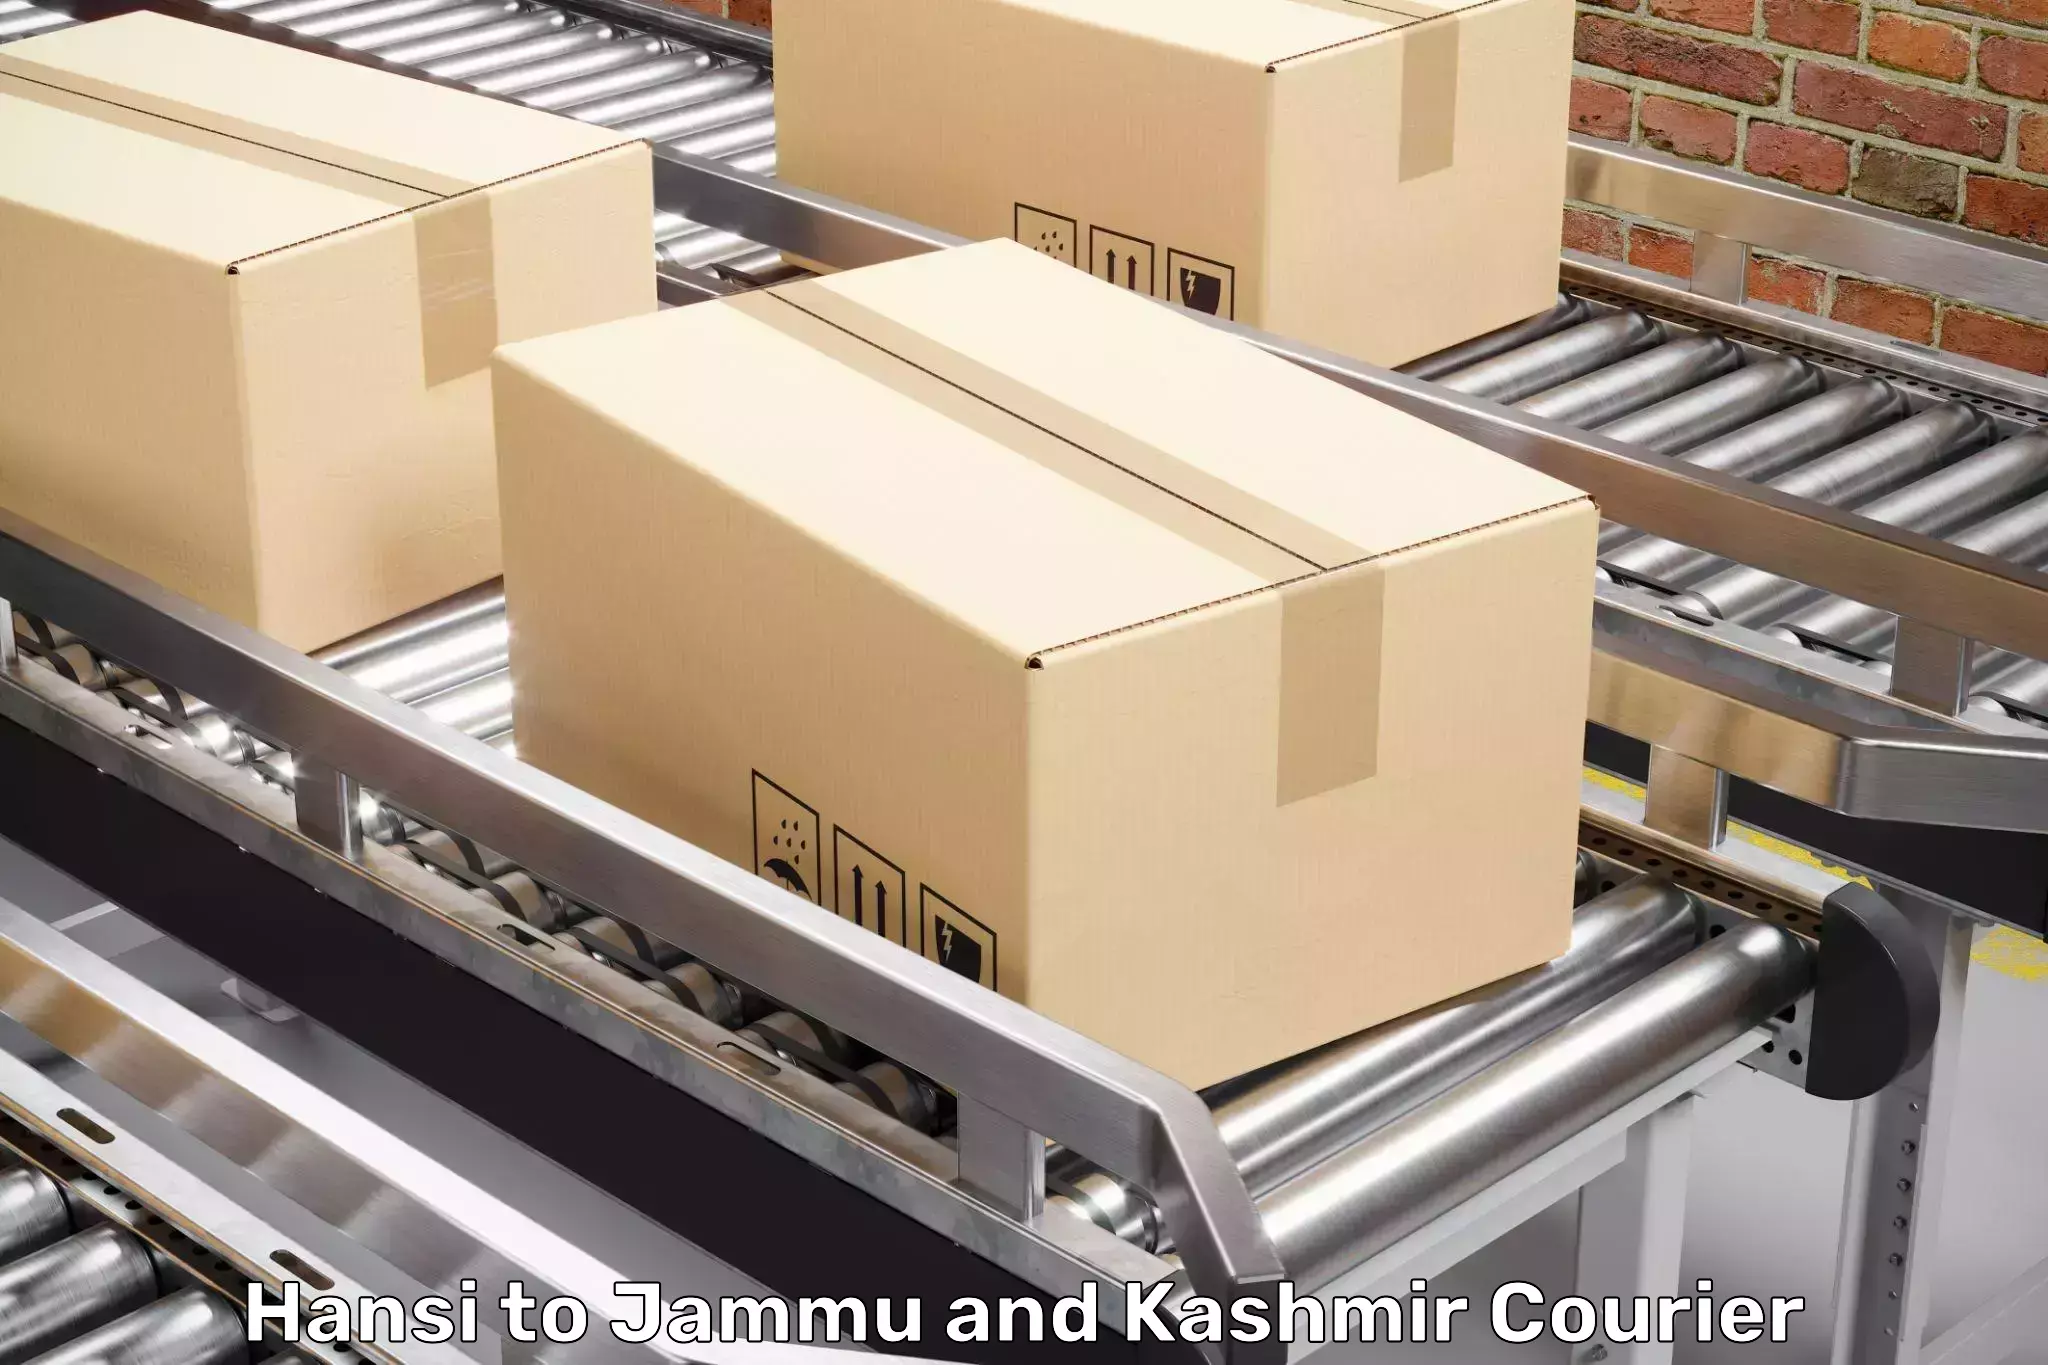 Furniture transport and logistics Hansi to Jammu and Kashmir